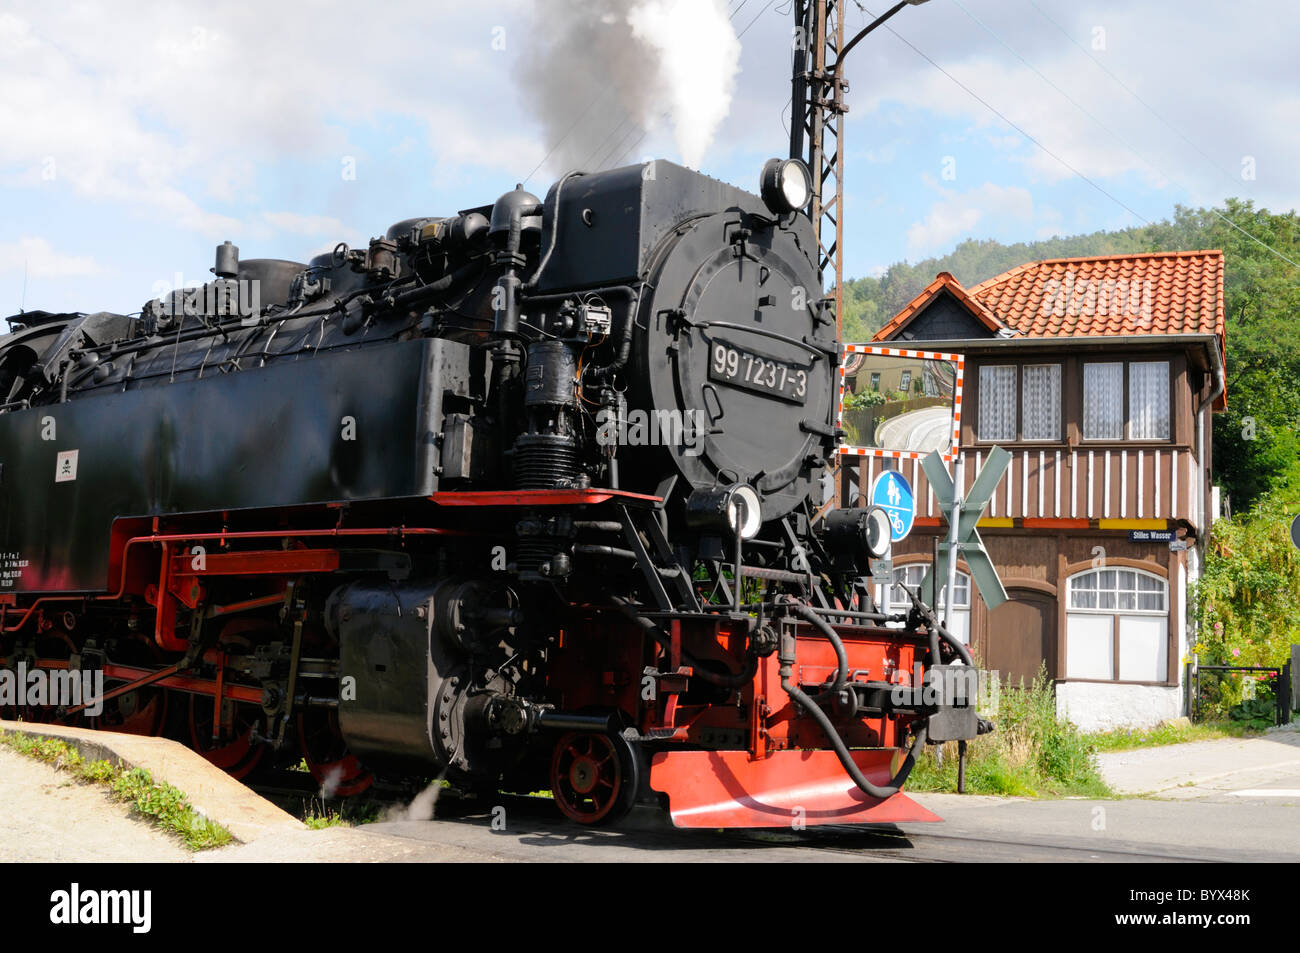 Dampflokomotive in Wernigerode, Sachsen-Anhalt, Deutschland. - Steam locomotive in Wernigerode, Saxony-Anhalt, Germany. Stock Photo